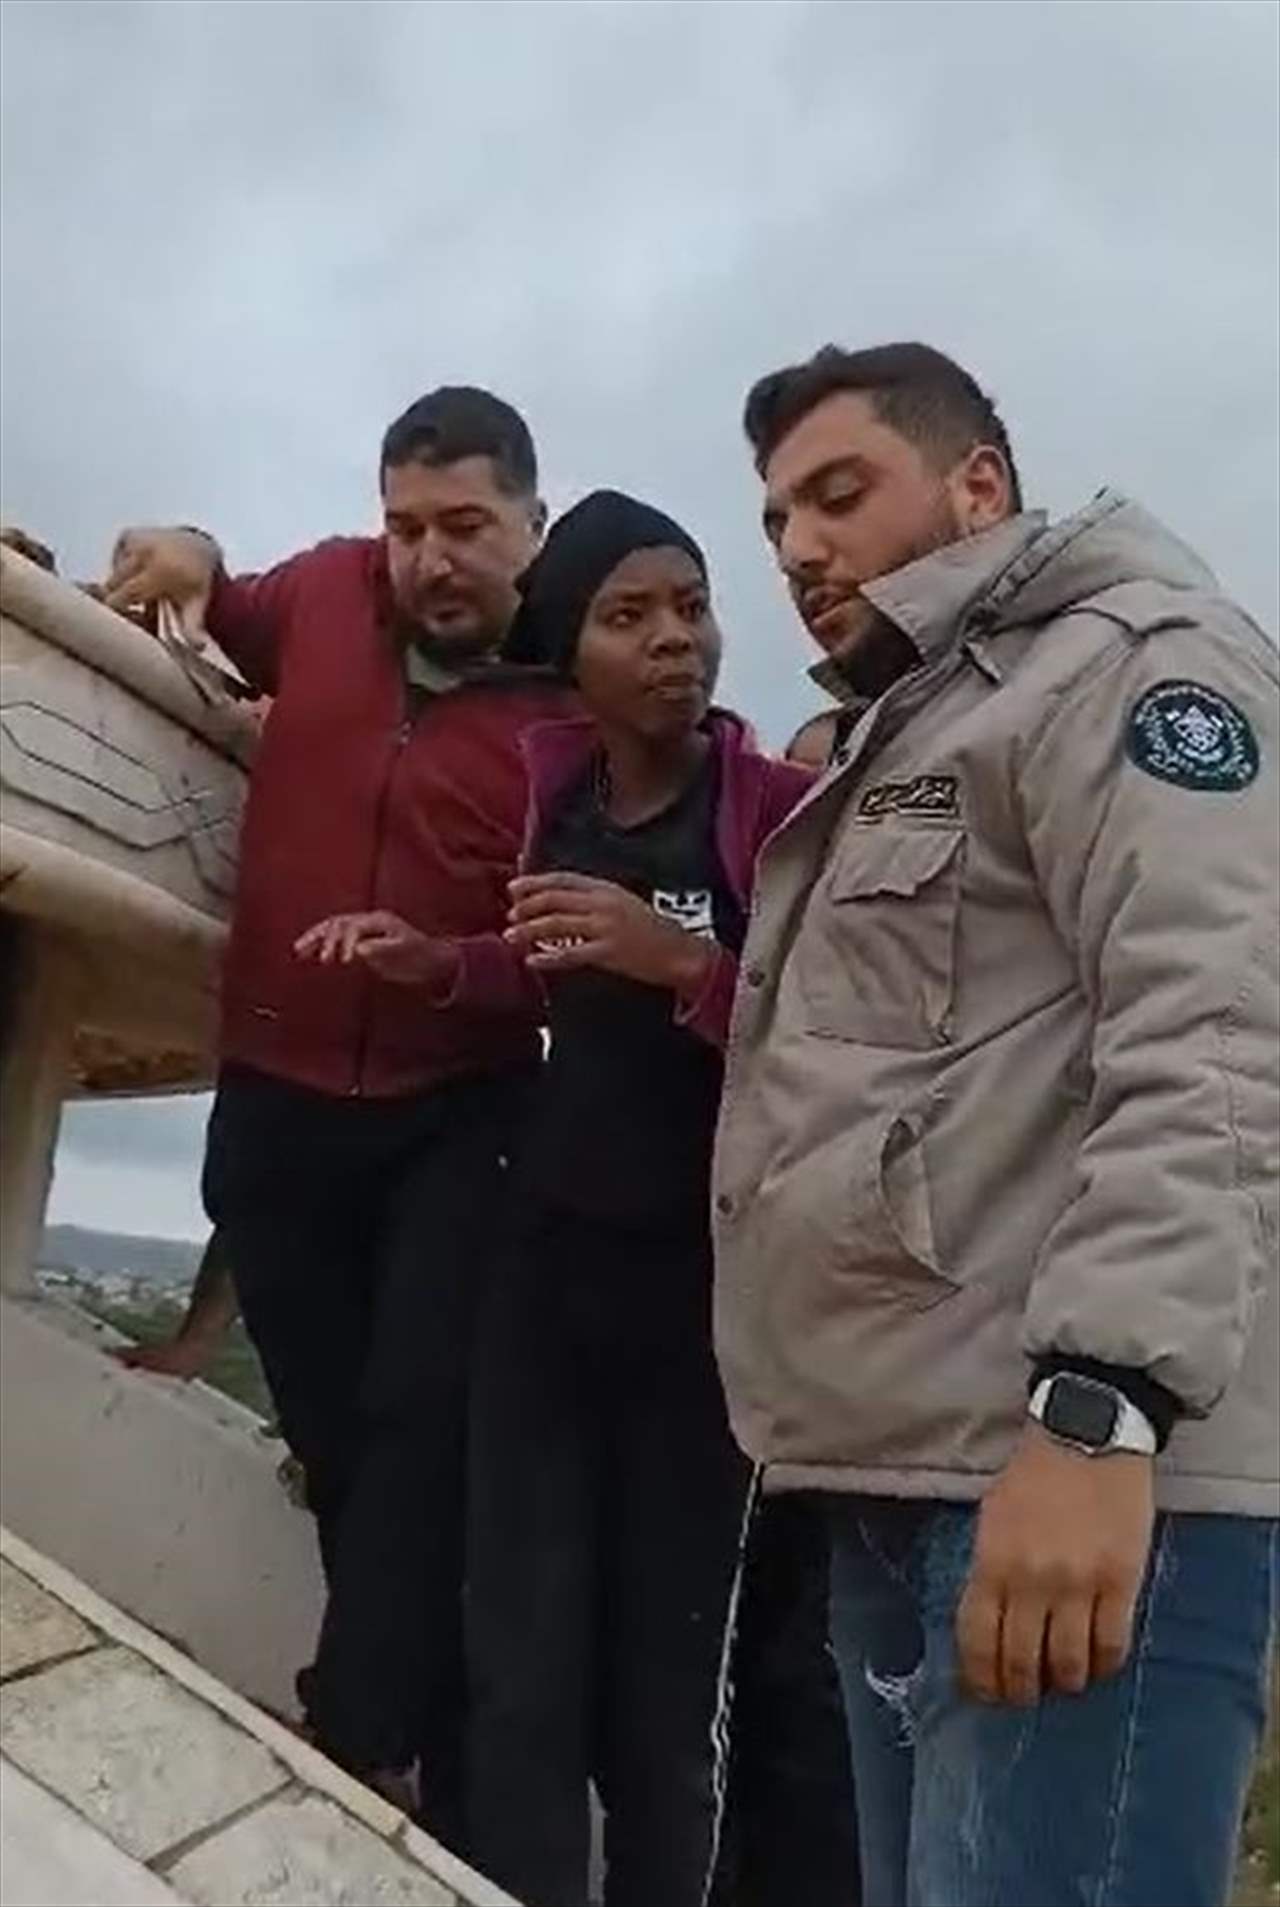   بالفيديو - منع عاملة أجنبية من إلقاء نفسها من أعلى عقار في منطقة الحوش قرب صور 